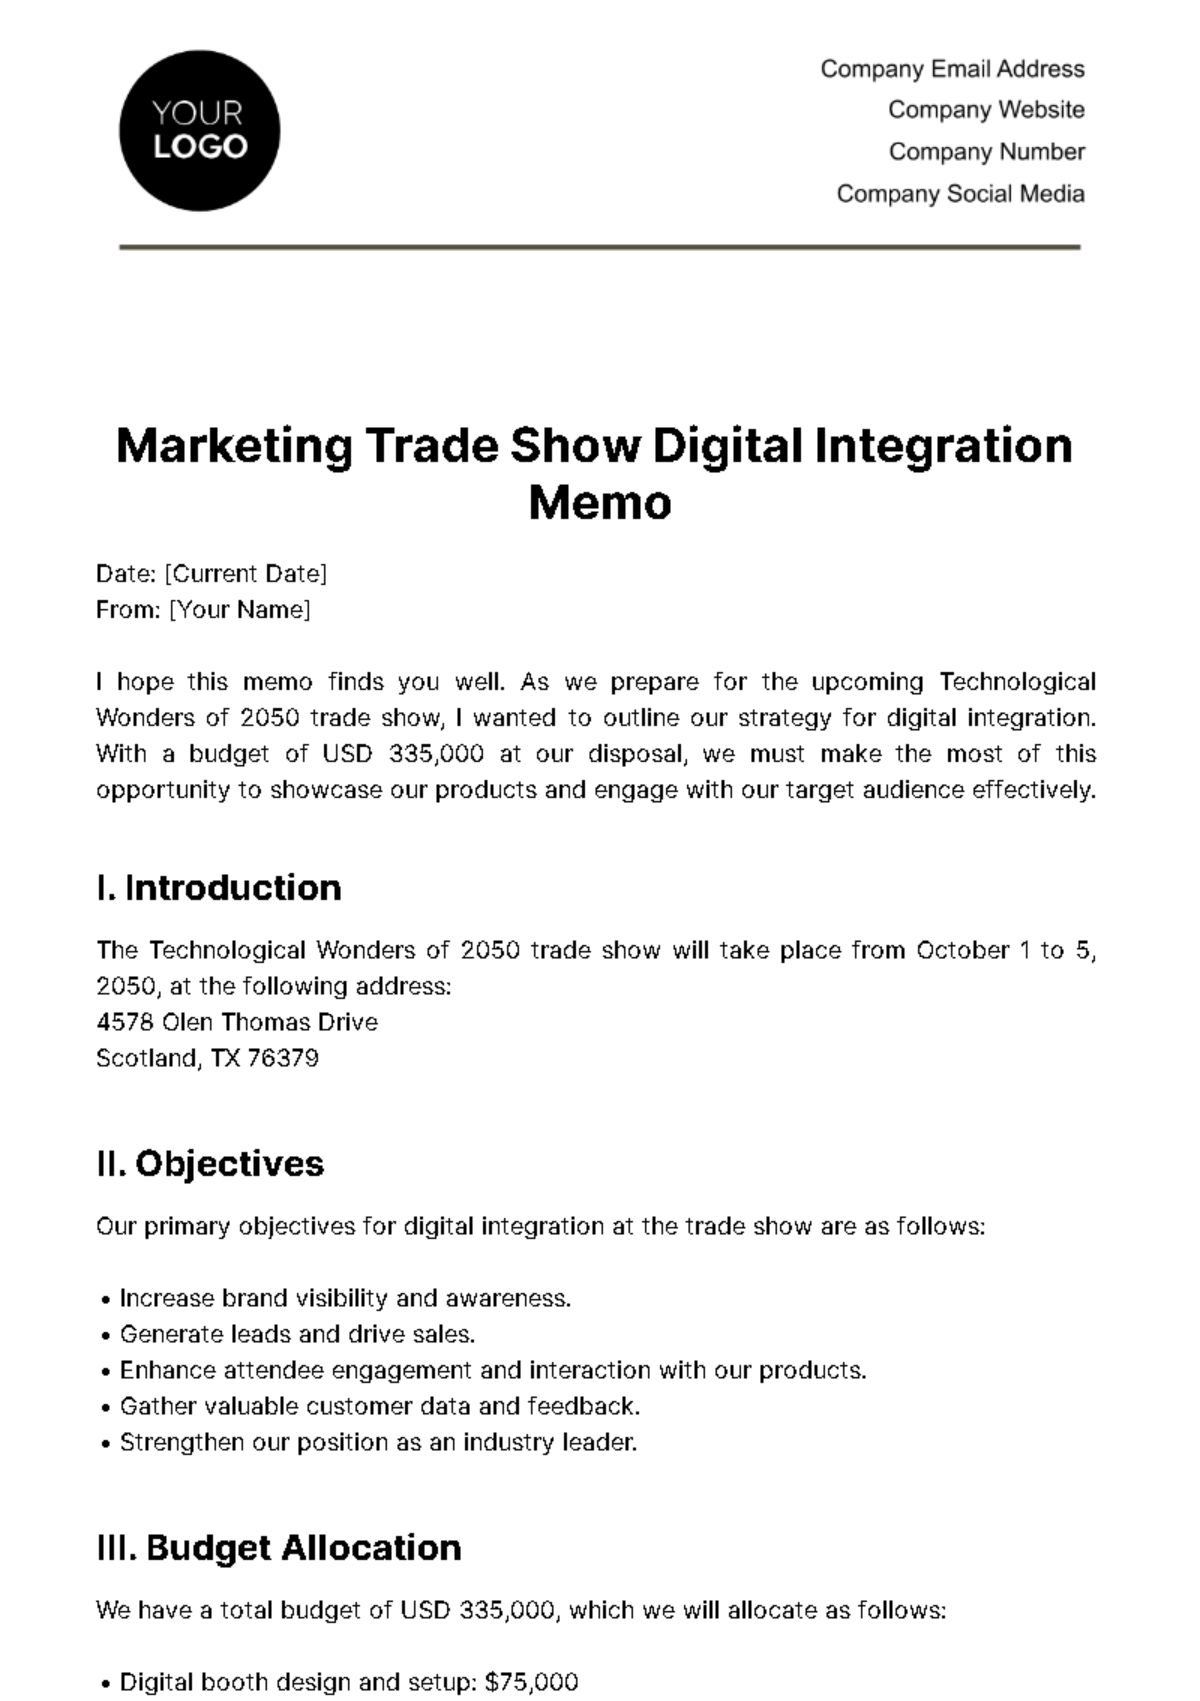 Marketing Trade Show Digital Integration Memo Template